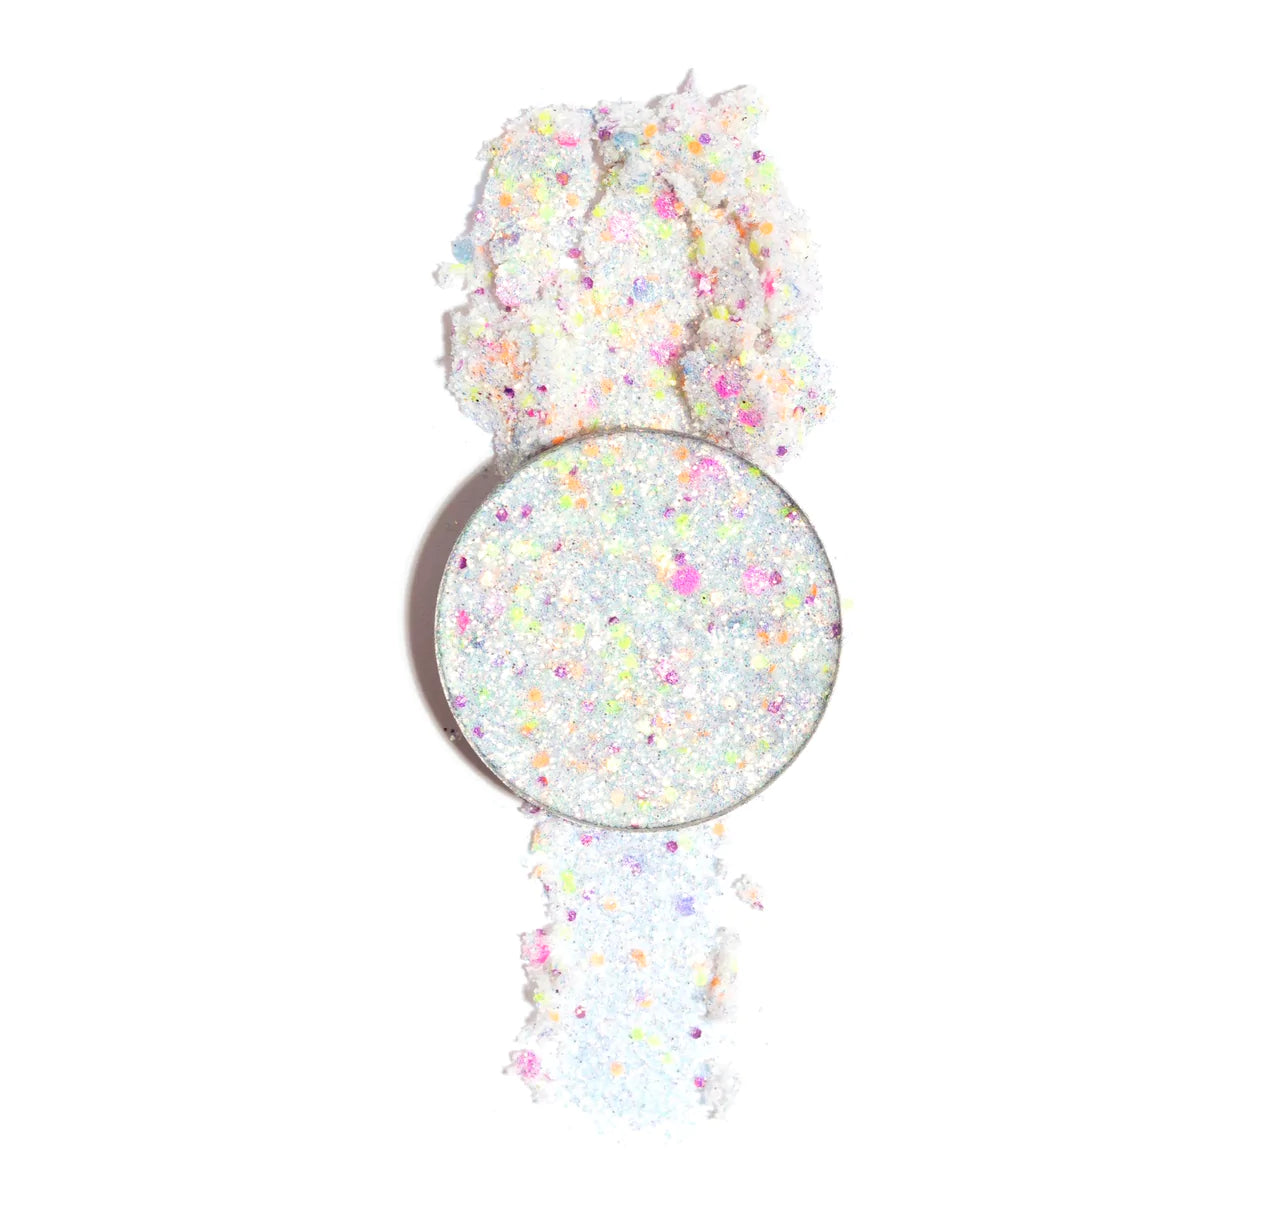 With Love Cosmetics - Pressed Glitter Limited Edition - Confetti